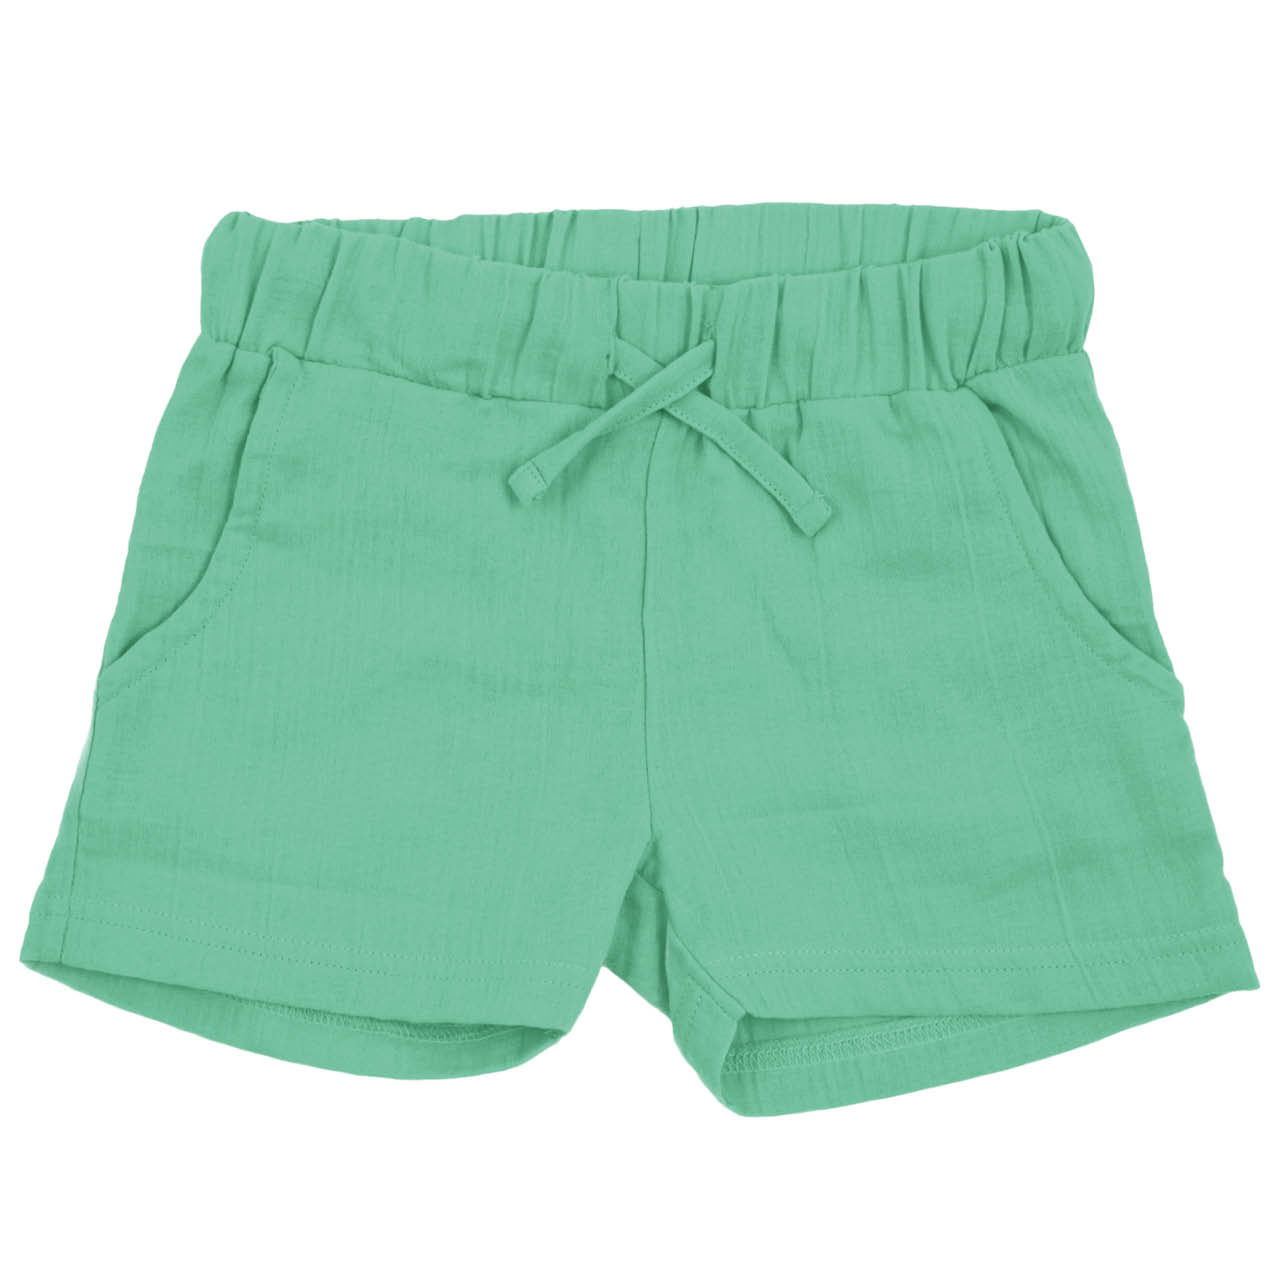 Kurze Musselin Shorts grün